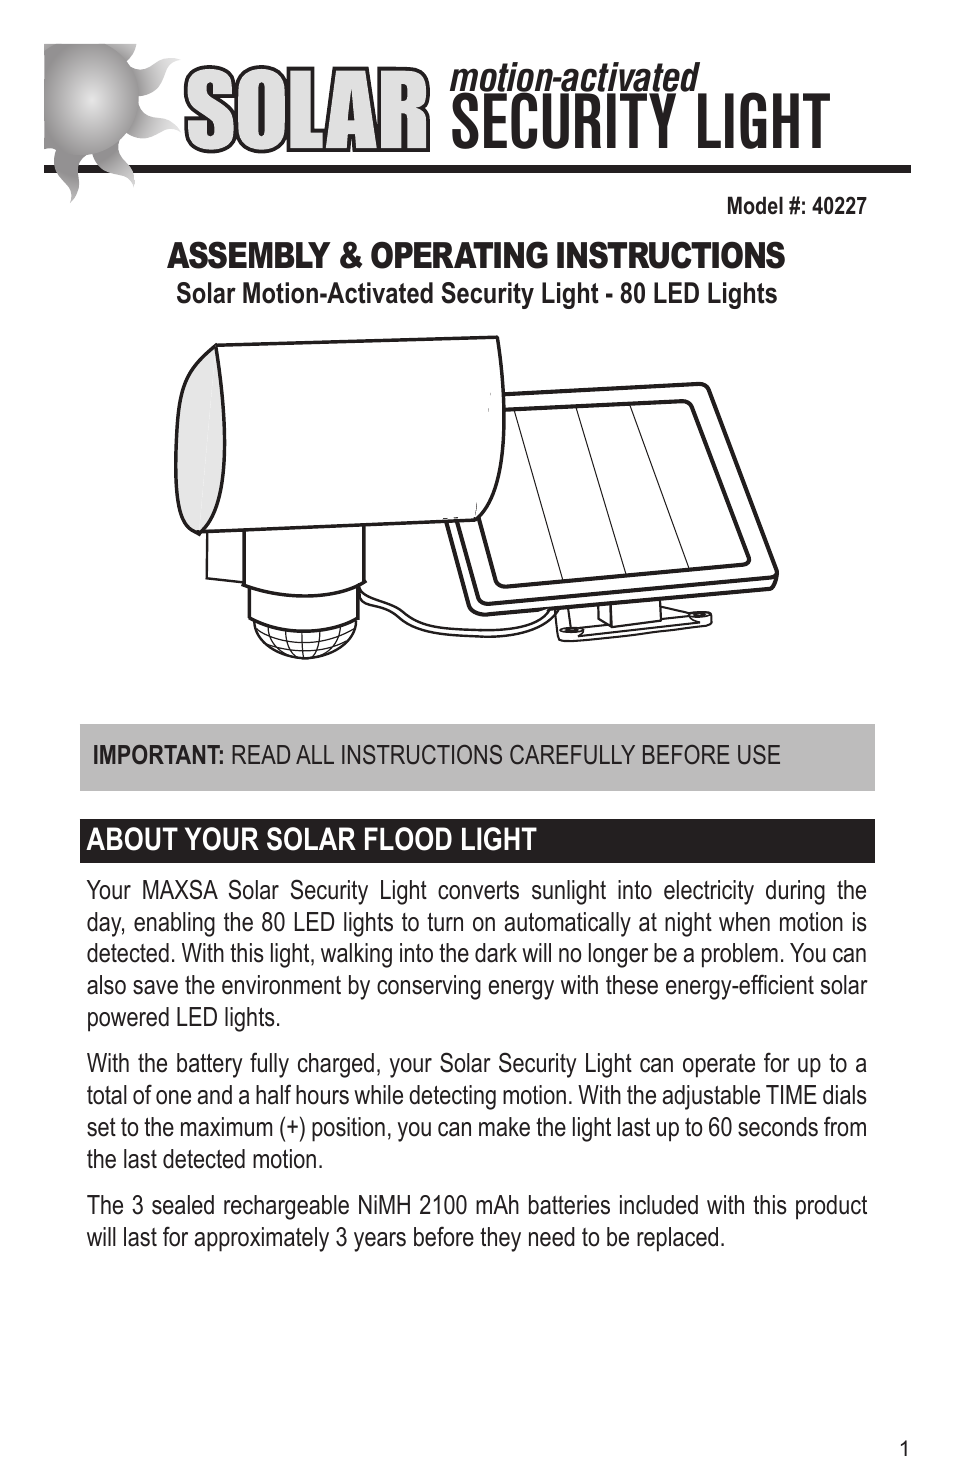 Solar-Powered Aluminum 80 LED Solar Security Light